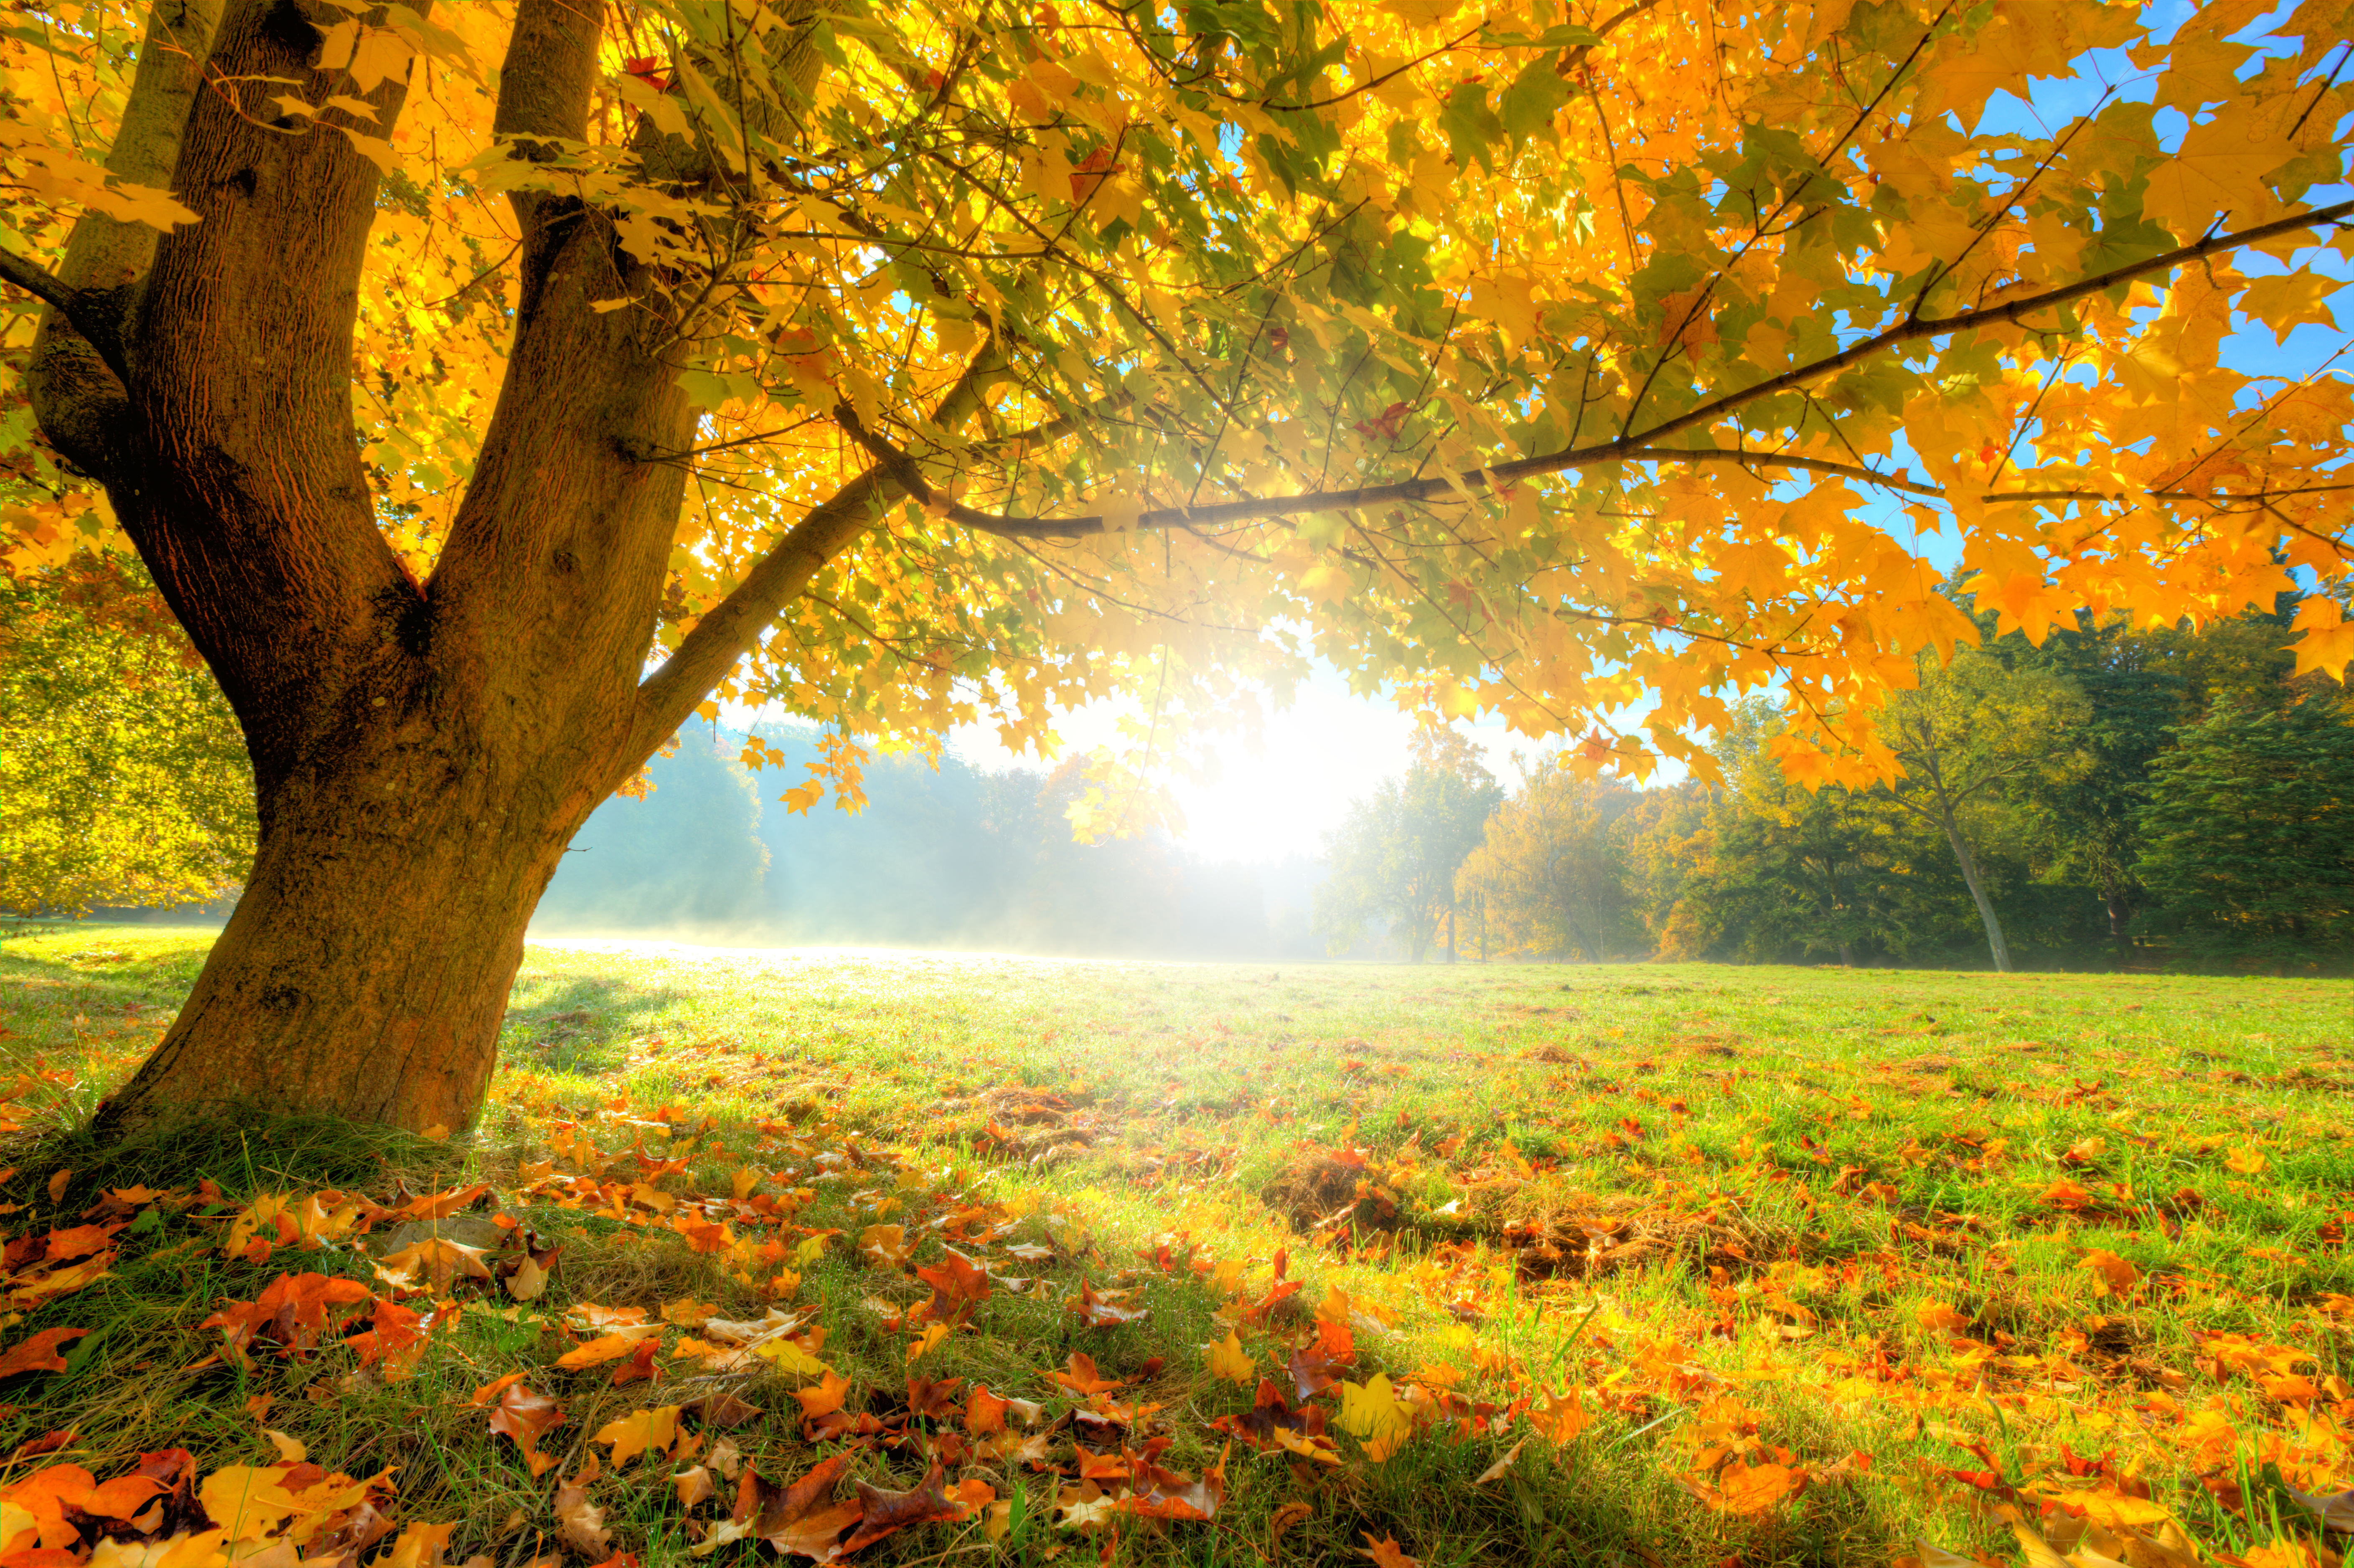 Скачать обои бесплатно Природа, Деревья, Трава, Осень, Солнце, Лес, Дерево, Листва, Земля/природа картинка на рабочий стол ПК